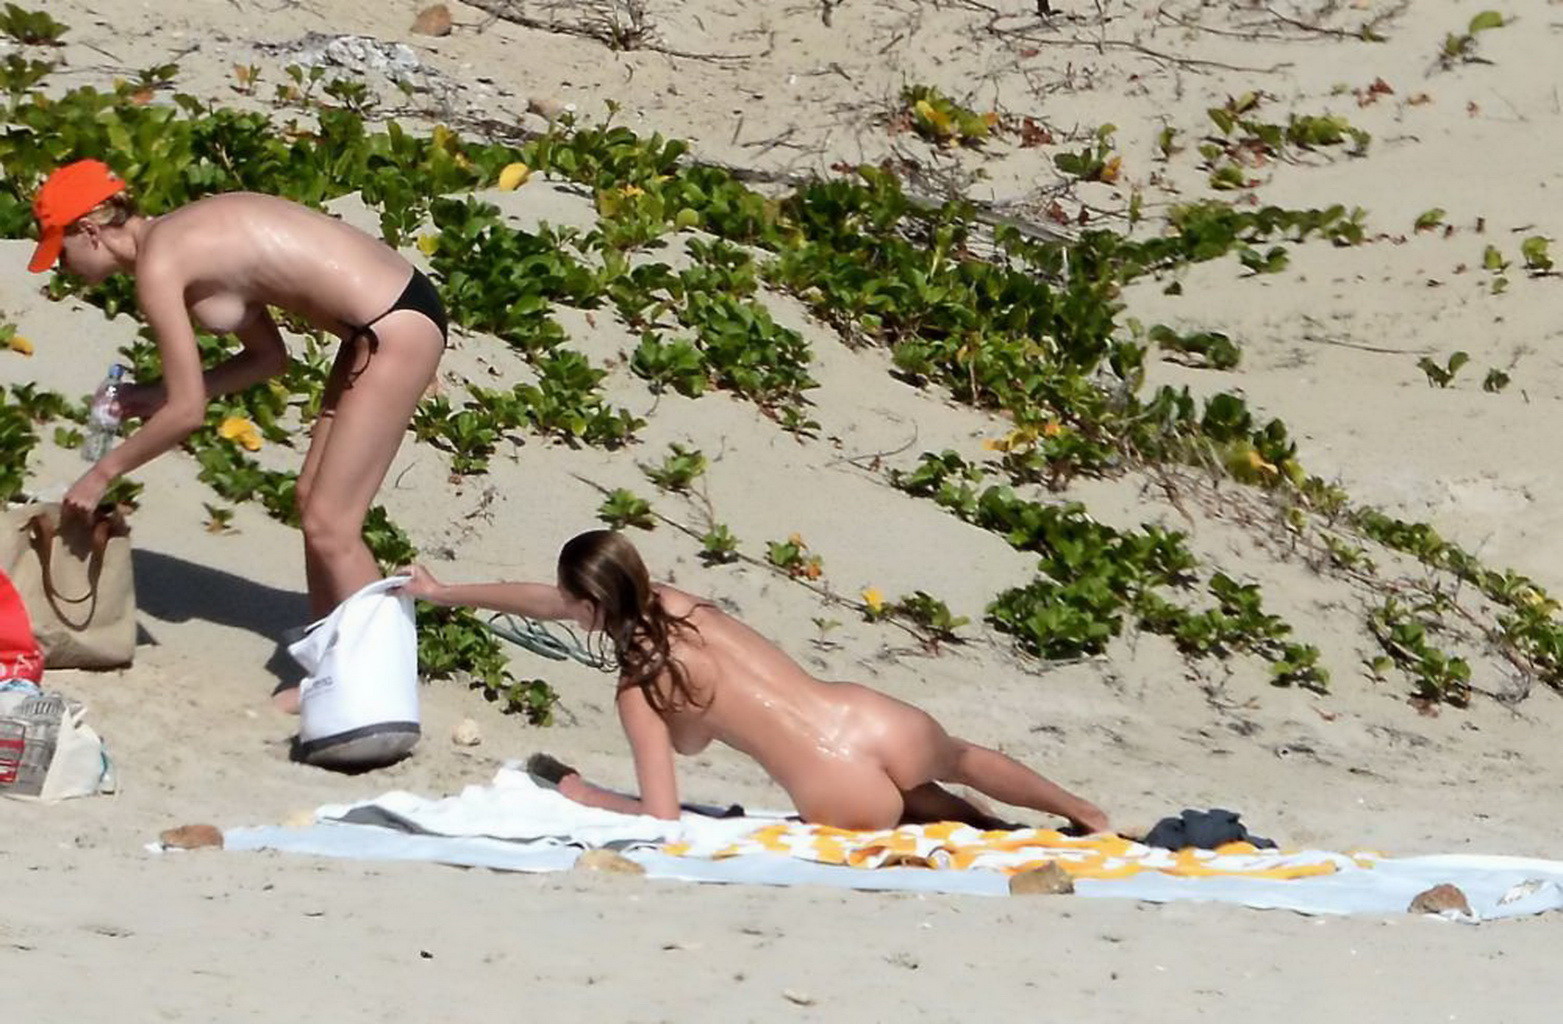 Edita vilkeviciute völlig nackt an einem Strand in Stbarts erwischt
 #75199986